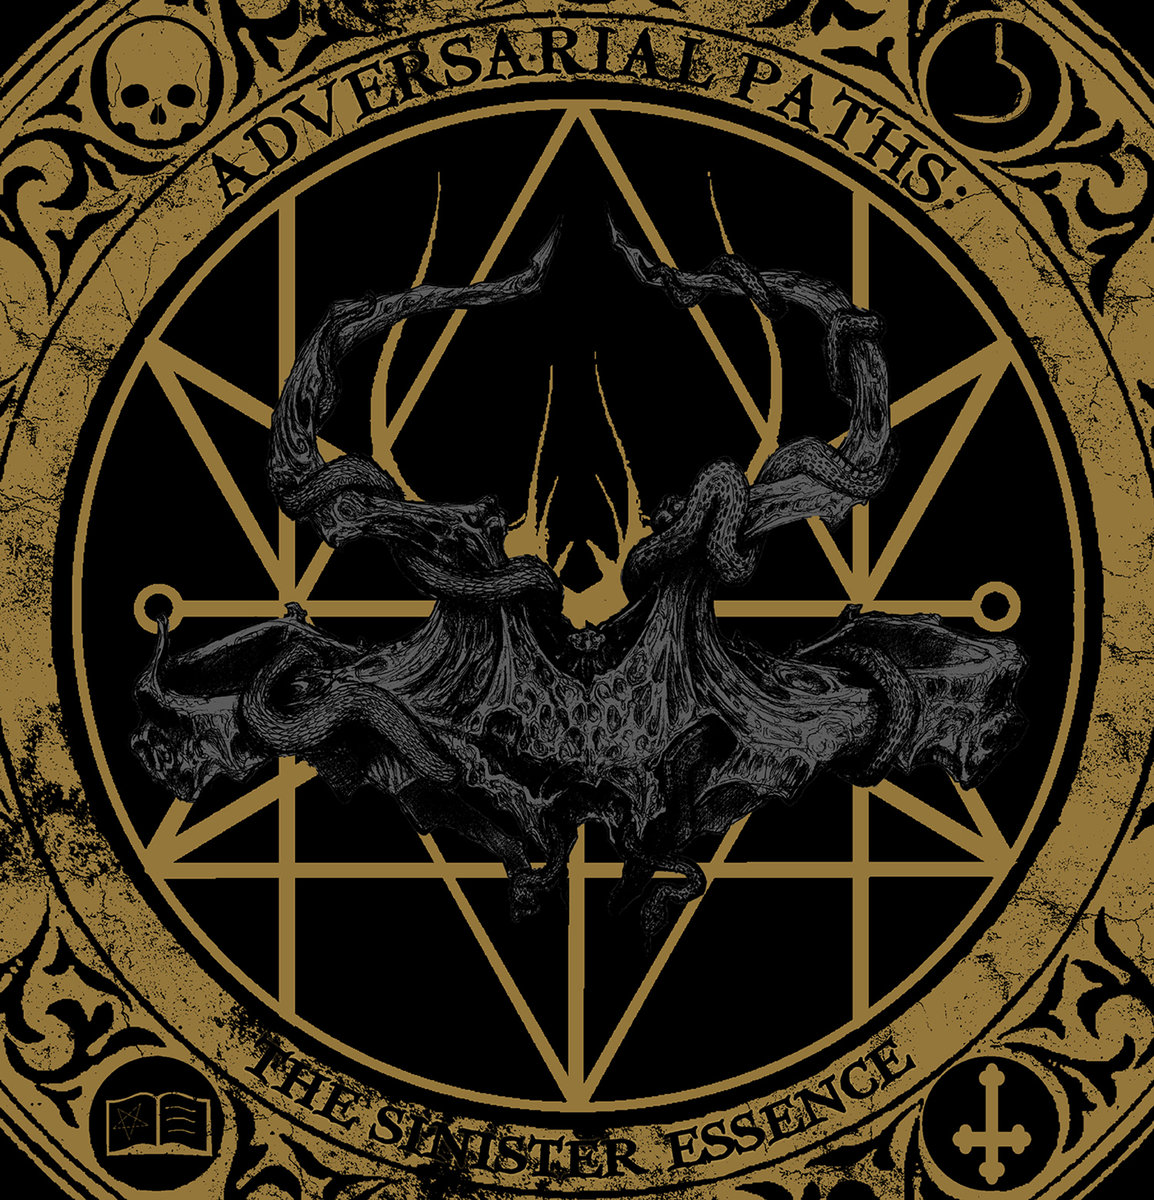 Kult of Taurus - Adversarial Paths: The Sinister Essence